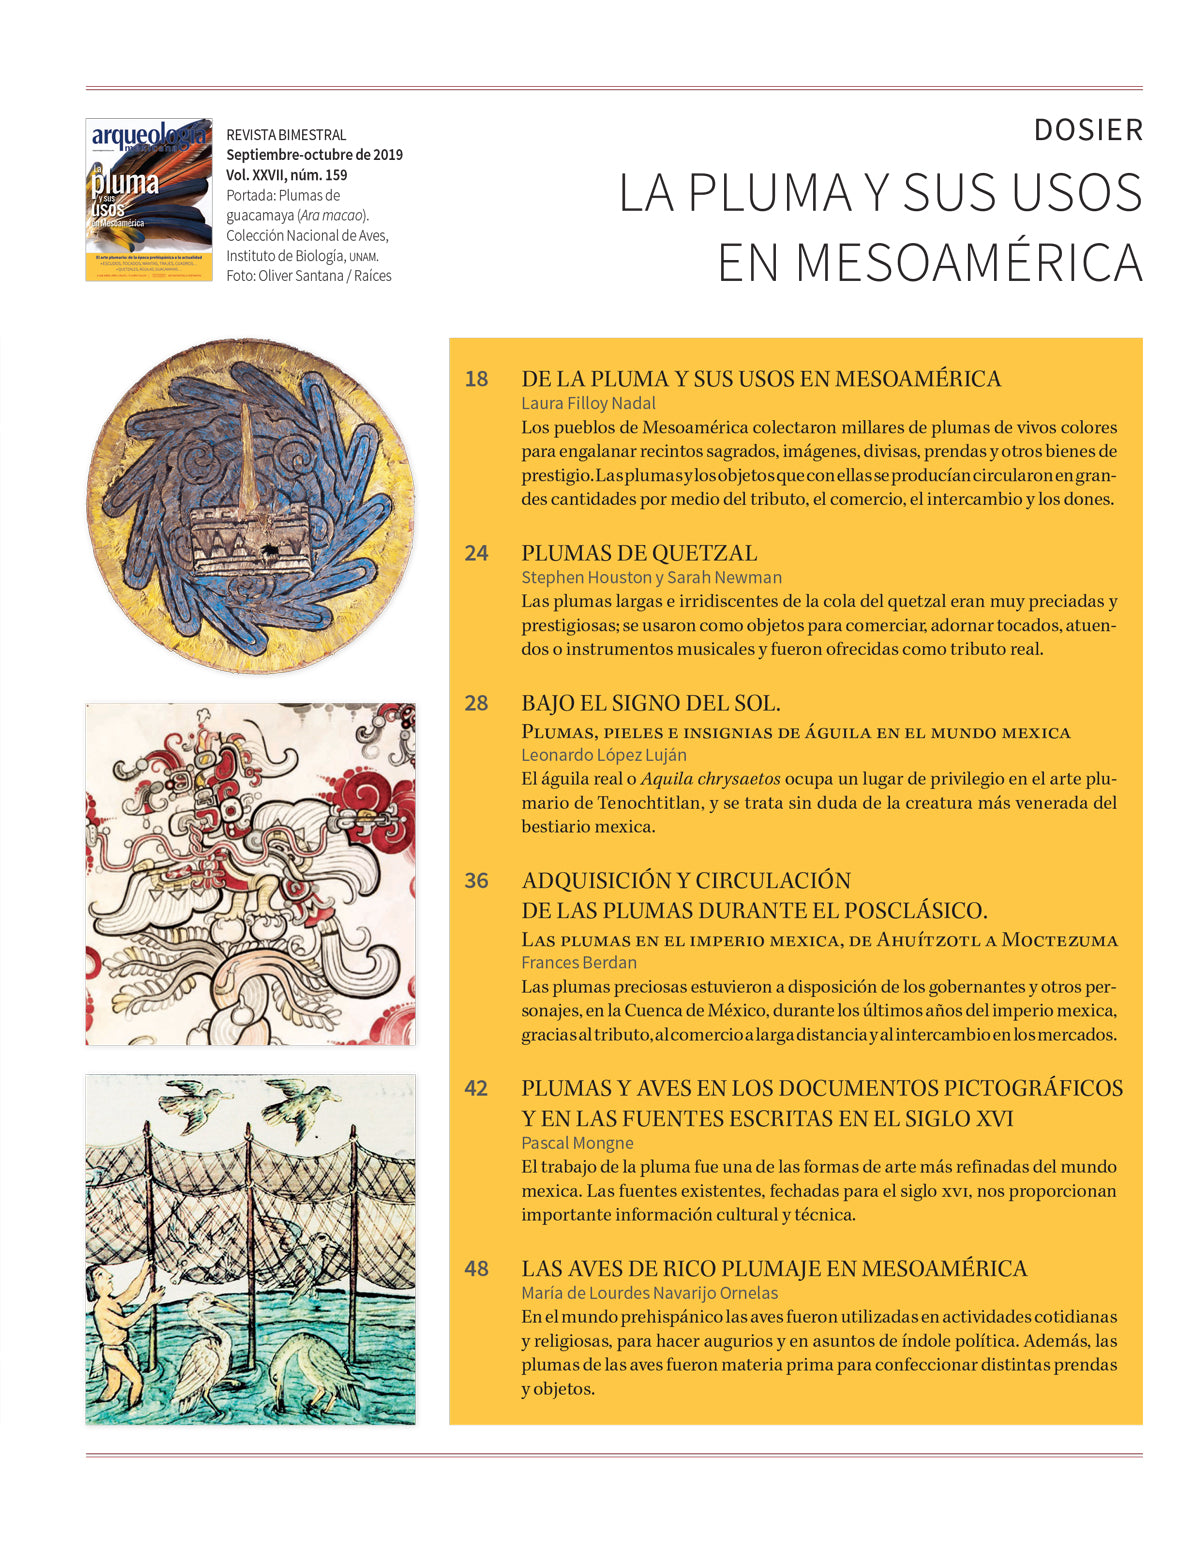 La pluma y sus usos en Mesoamérica